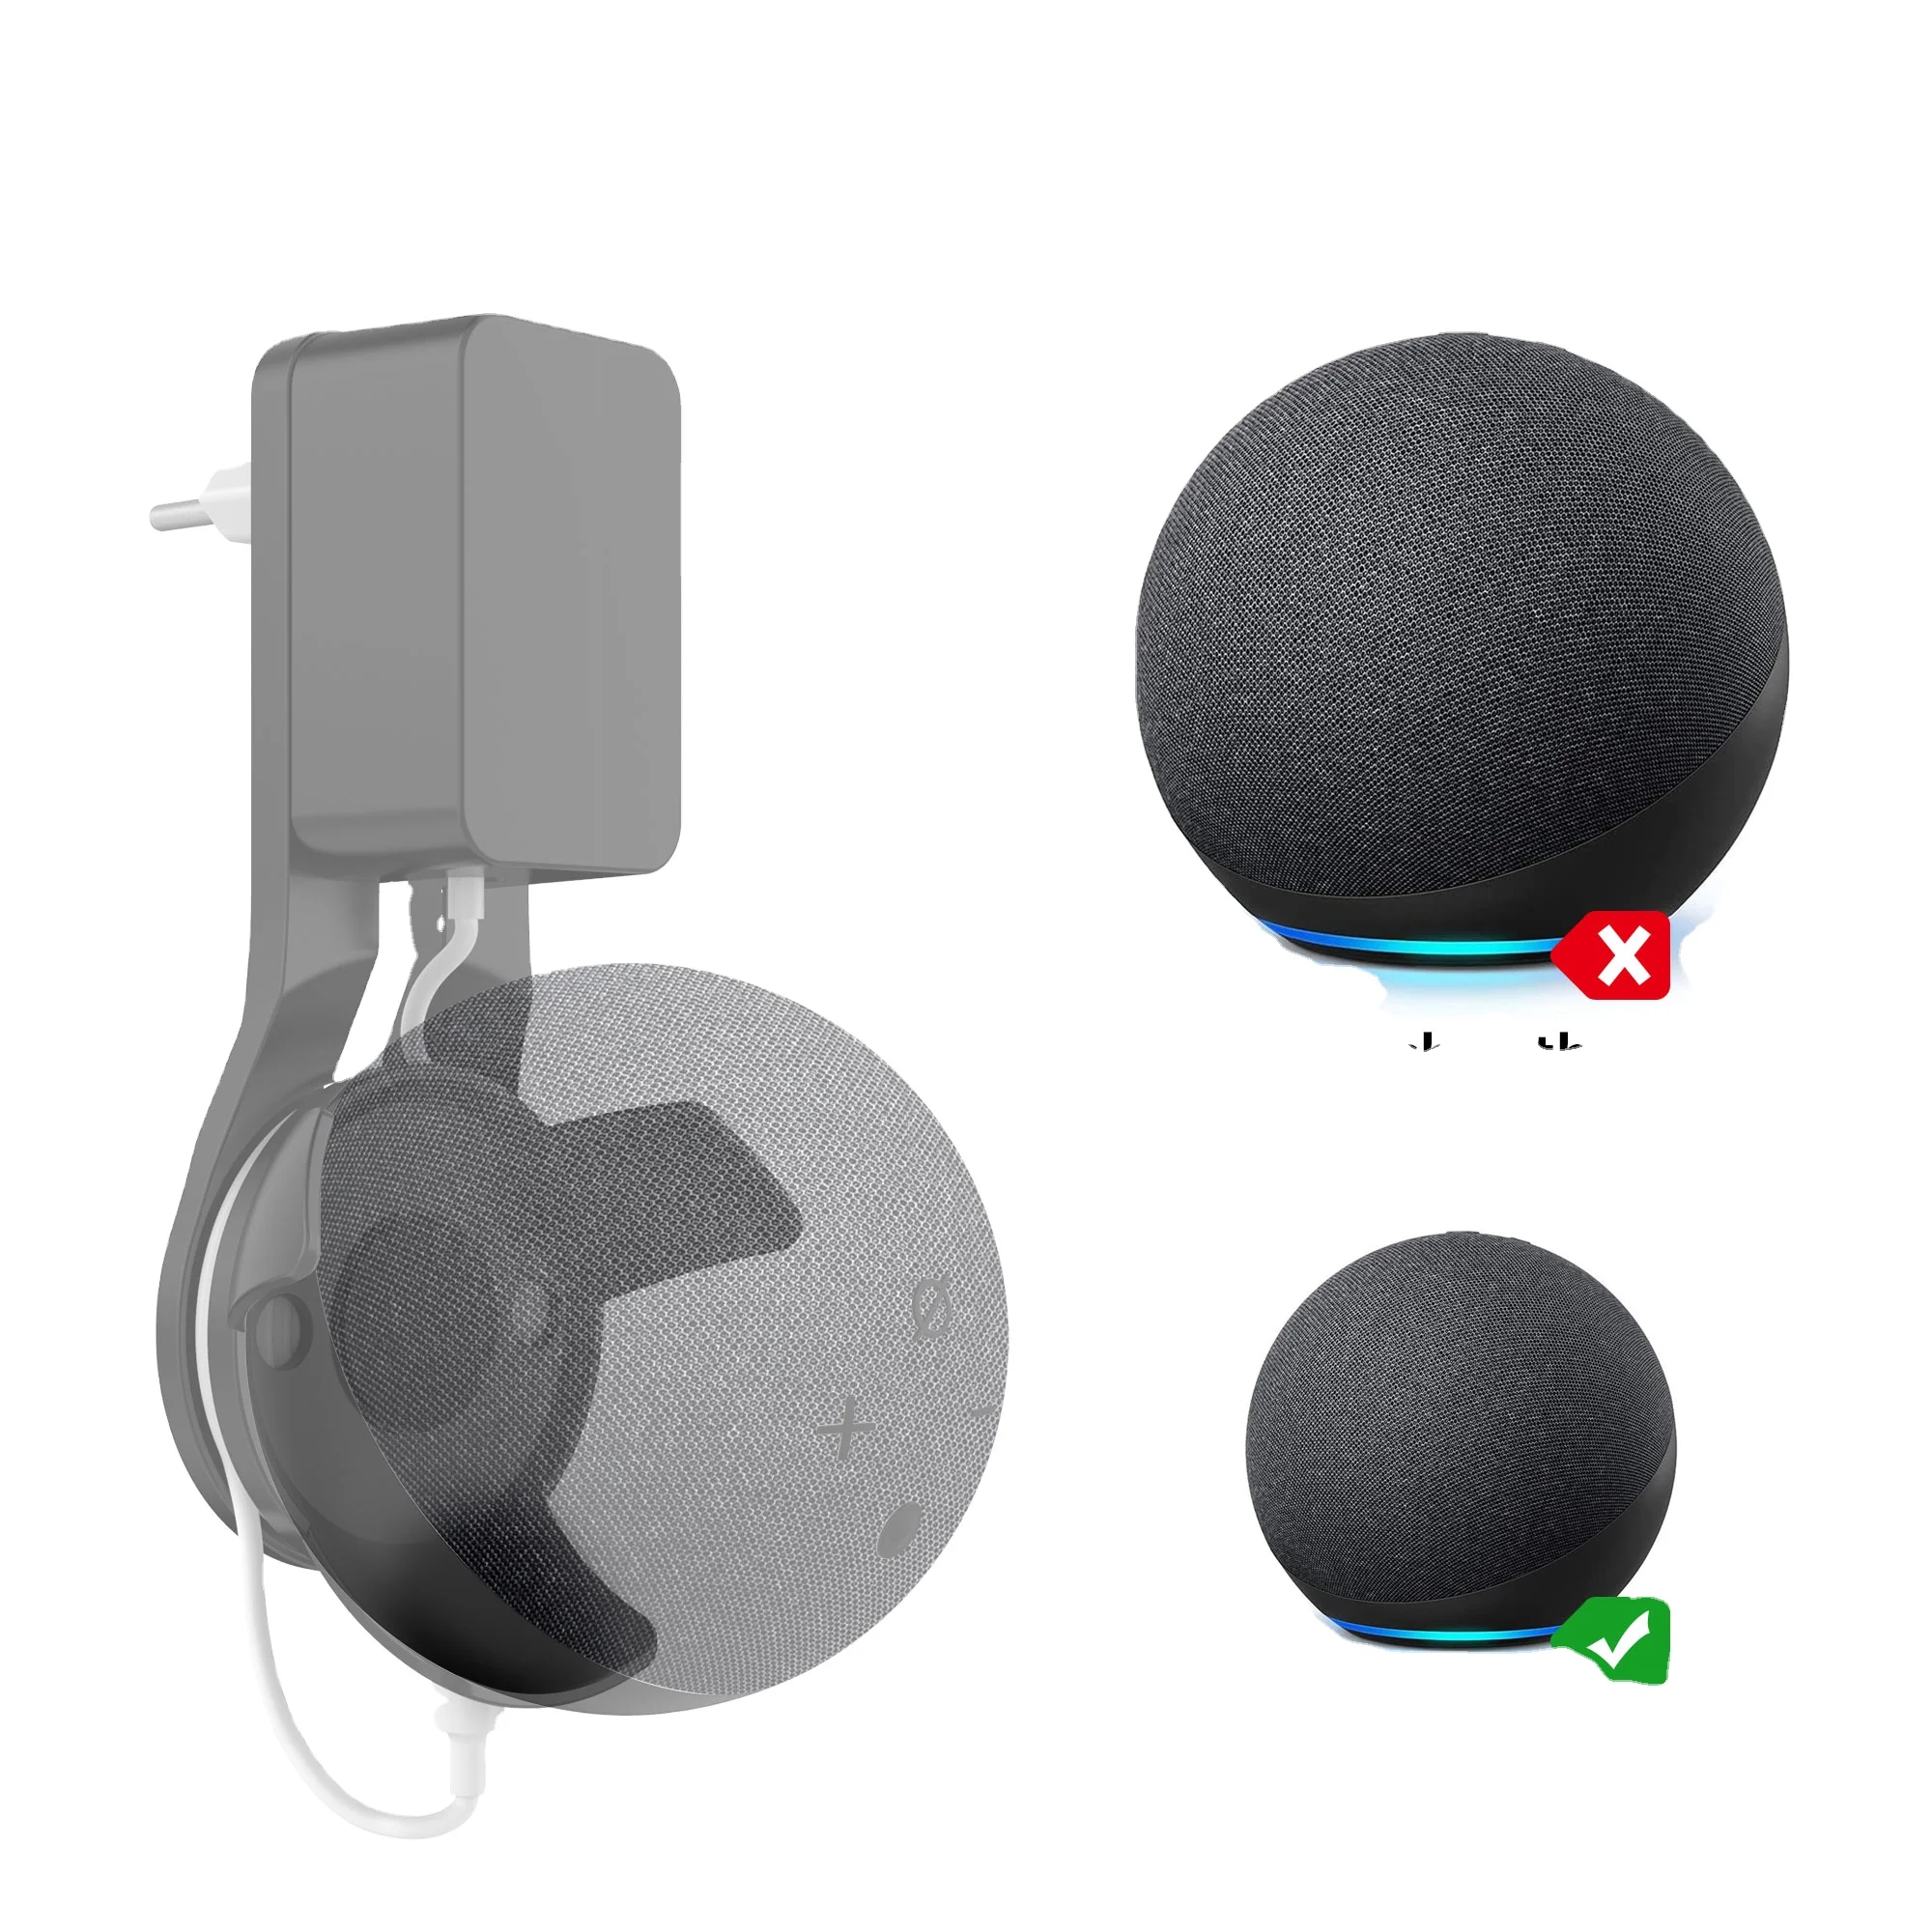 

New For Amazon echo dot 4rd gen Smart speaker Outlet Wall Mount for google home mini Holder, Black ,white